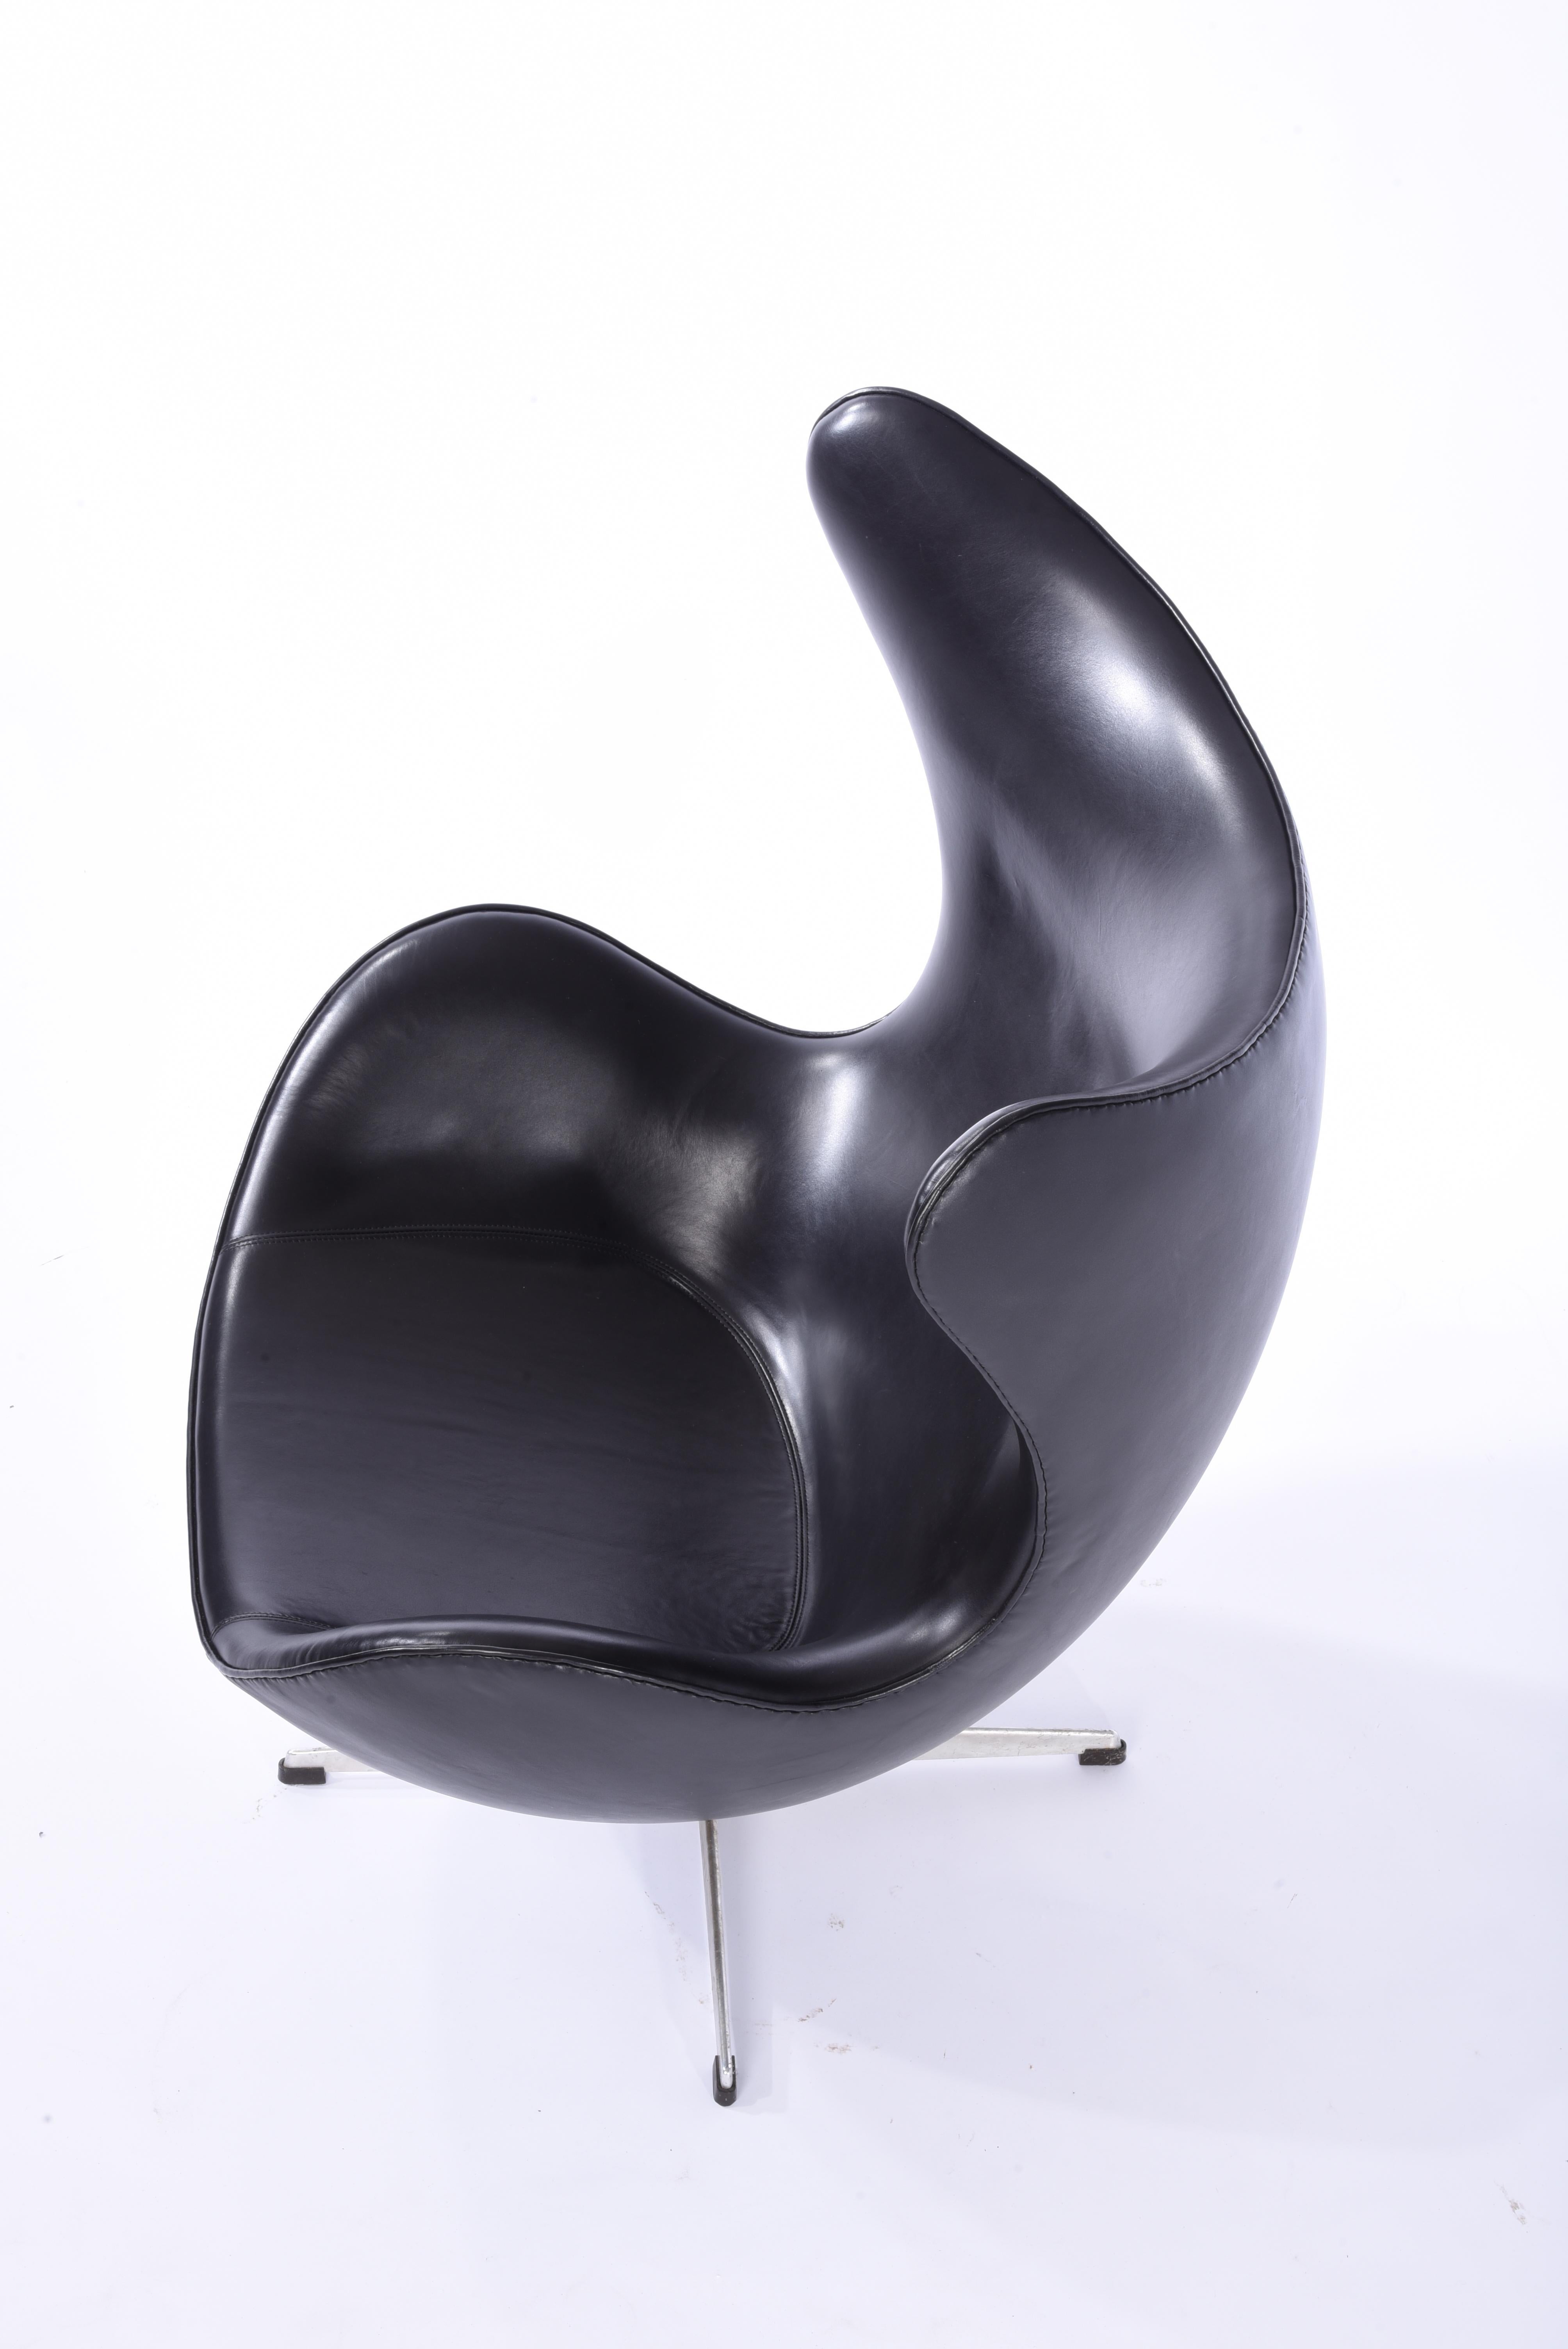 Early Arne Jacobsen egg chair for Fritz Hansen, Denmark, circa 1959. New black leather.